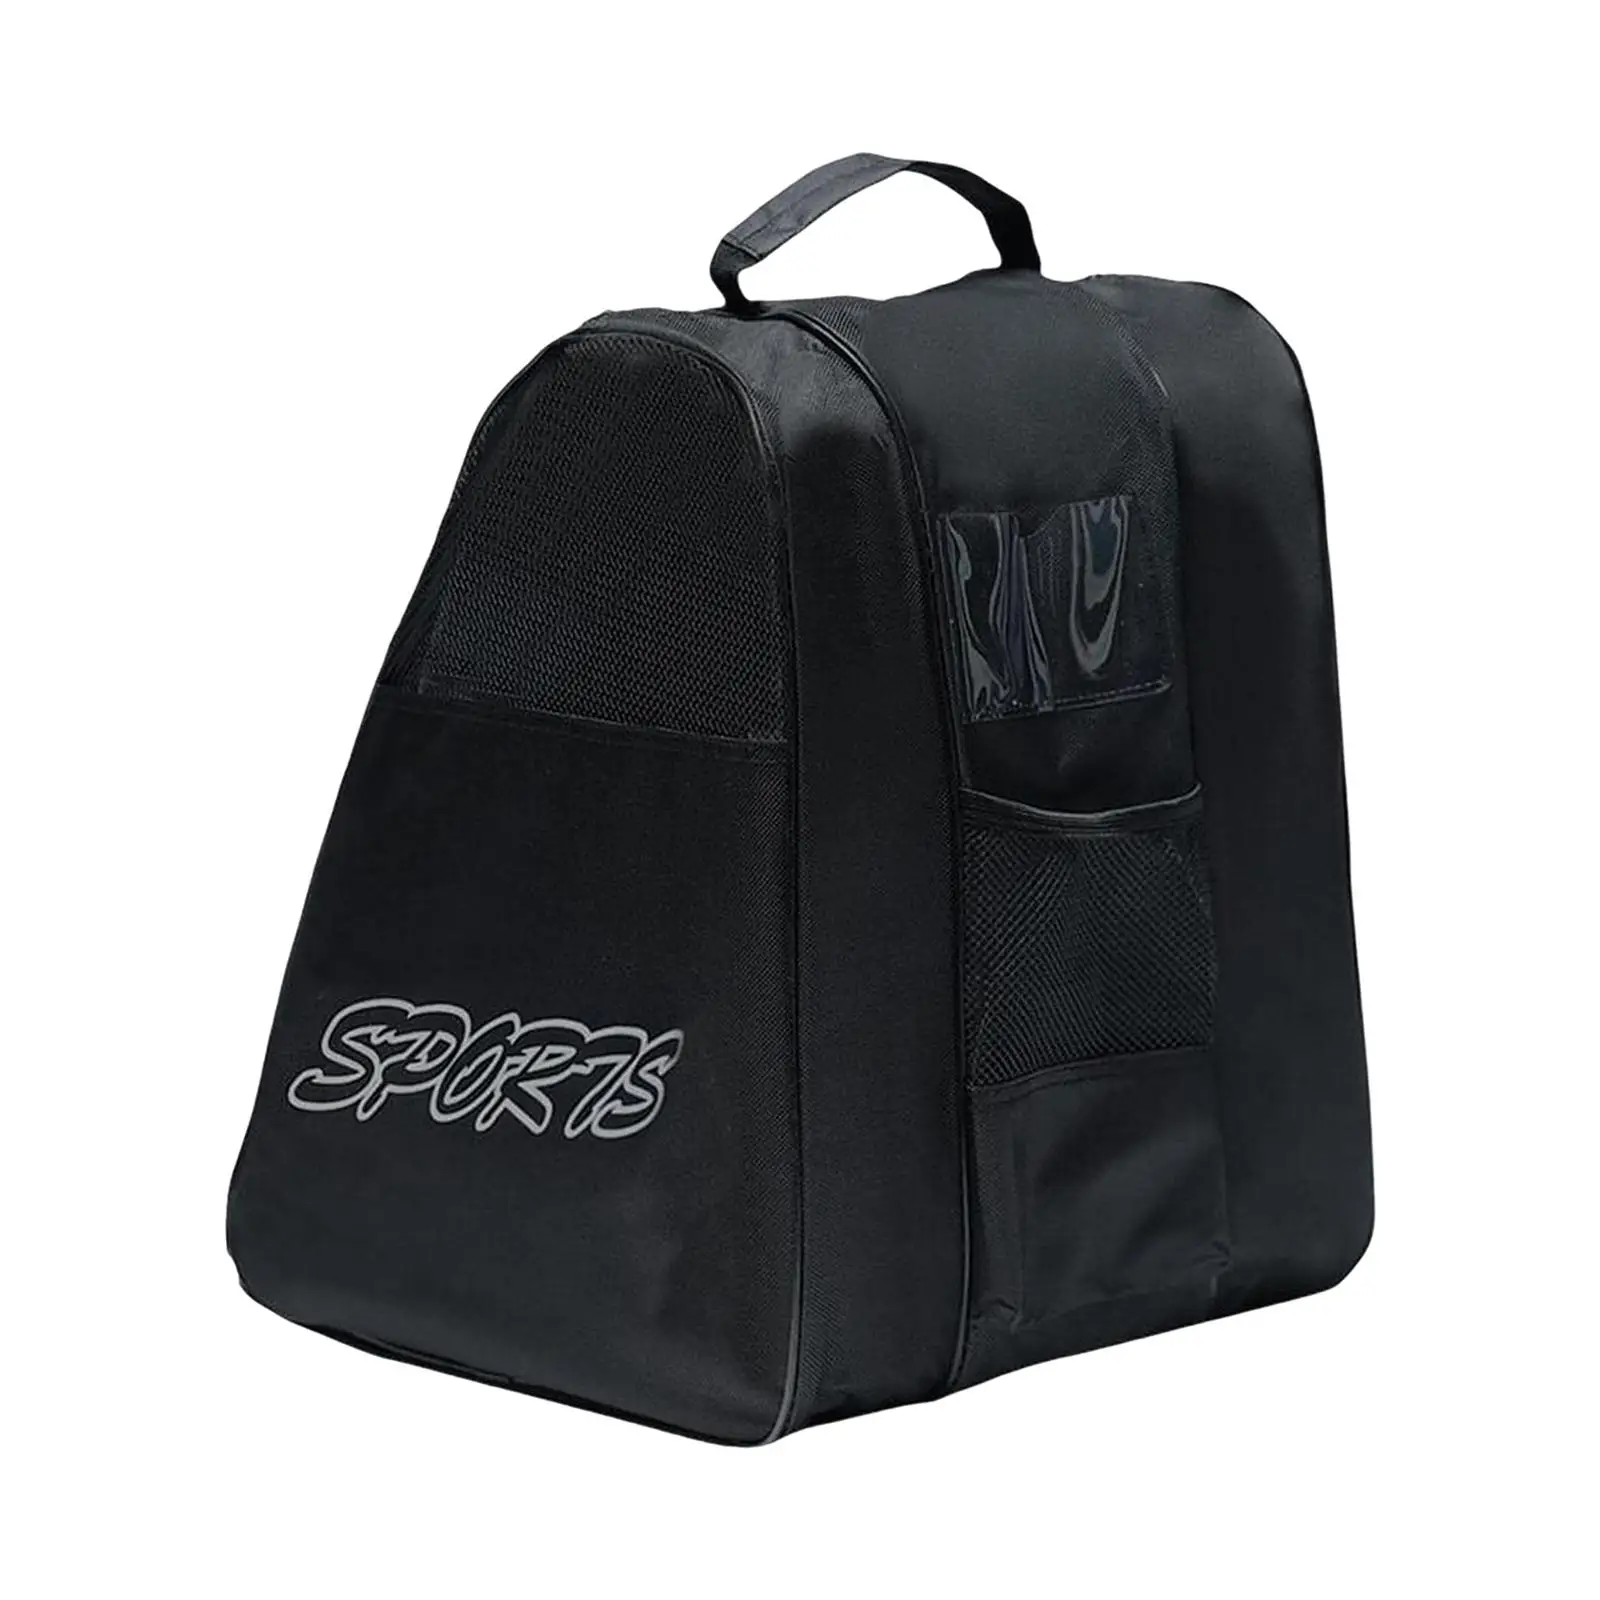 Roller Skate Bags Adjustable Shoulder Strap Lightweight Skate Carry Bag Handbag for Figure Skates Ice Hockey Skate Inline Skates